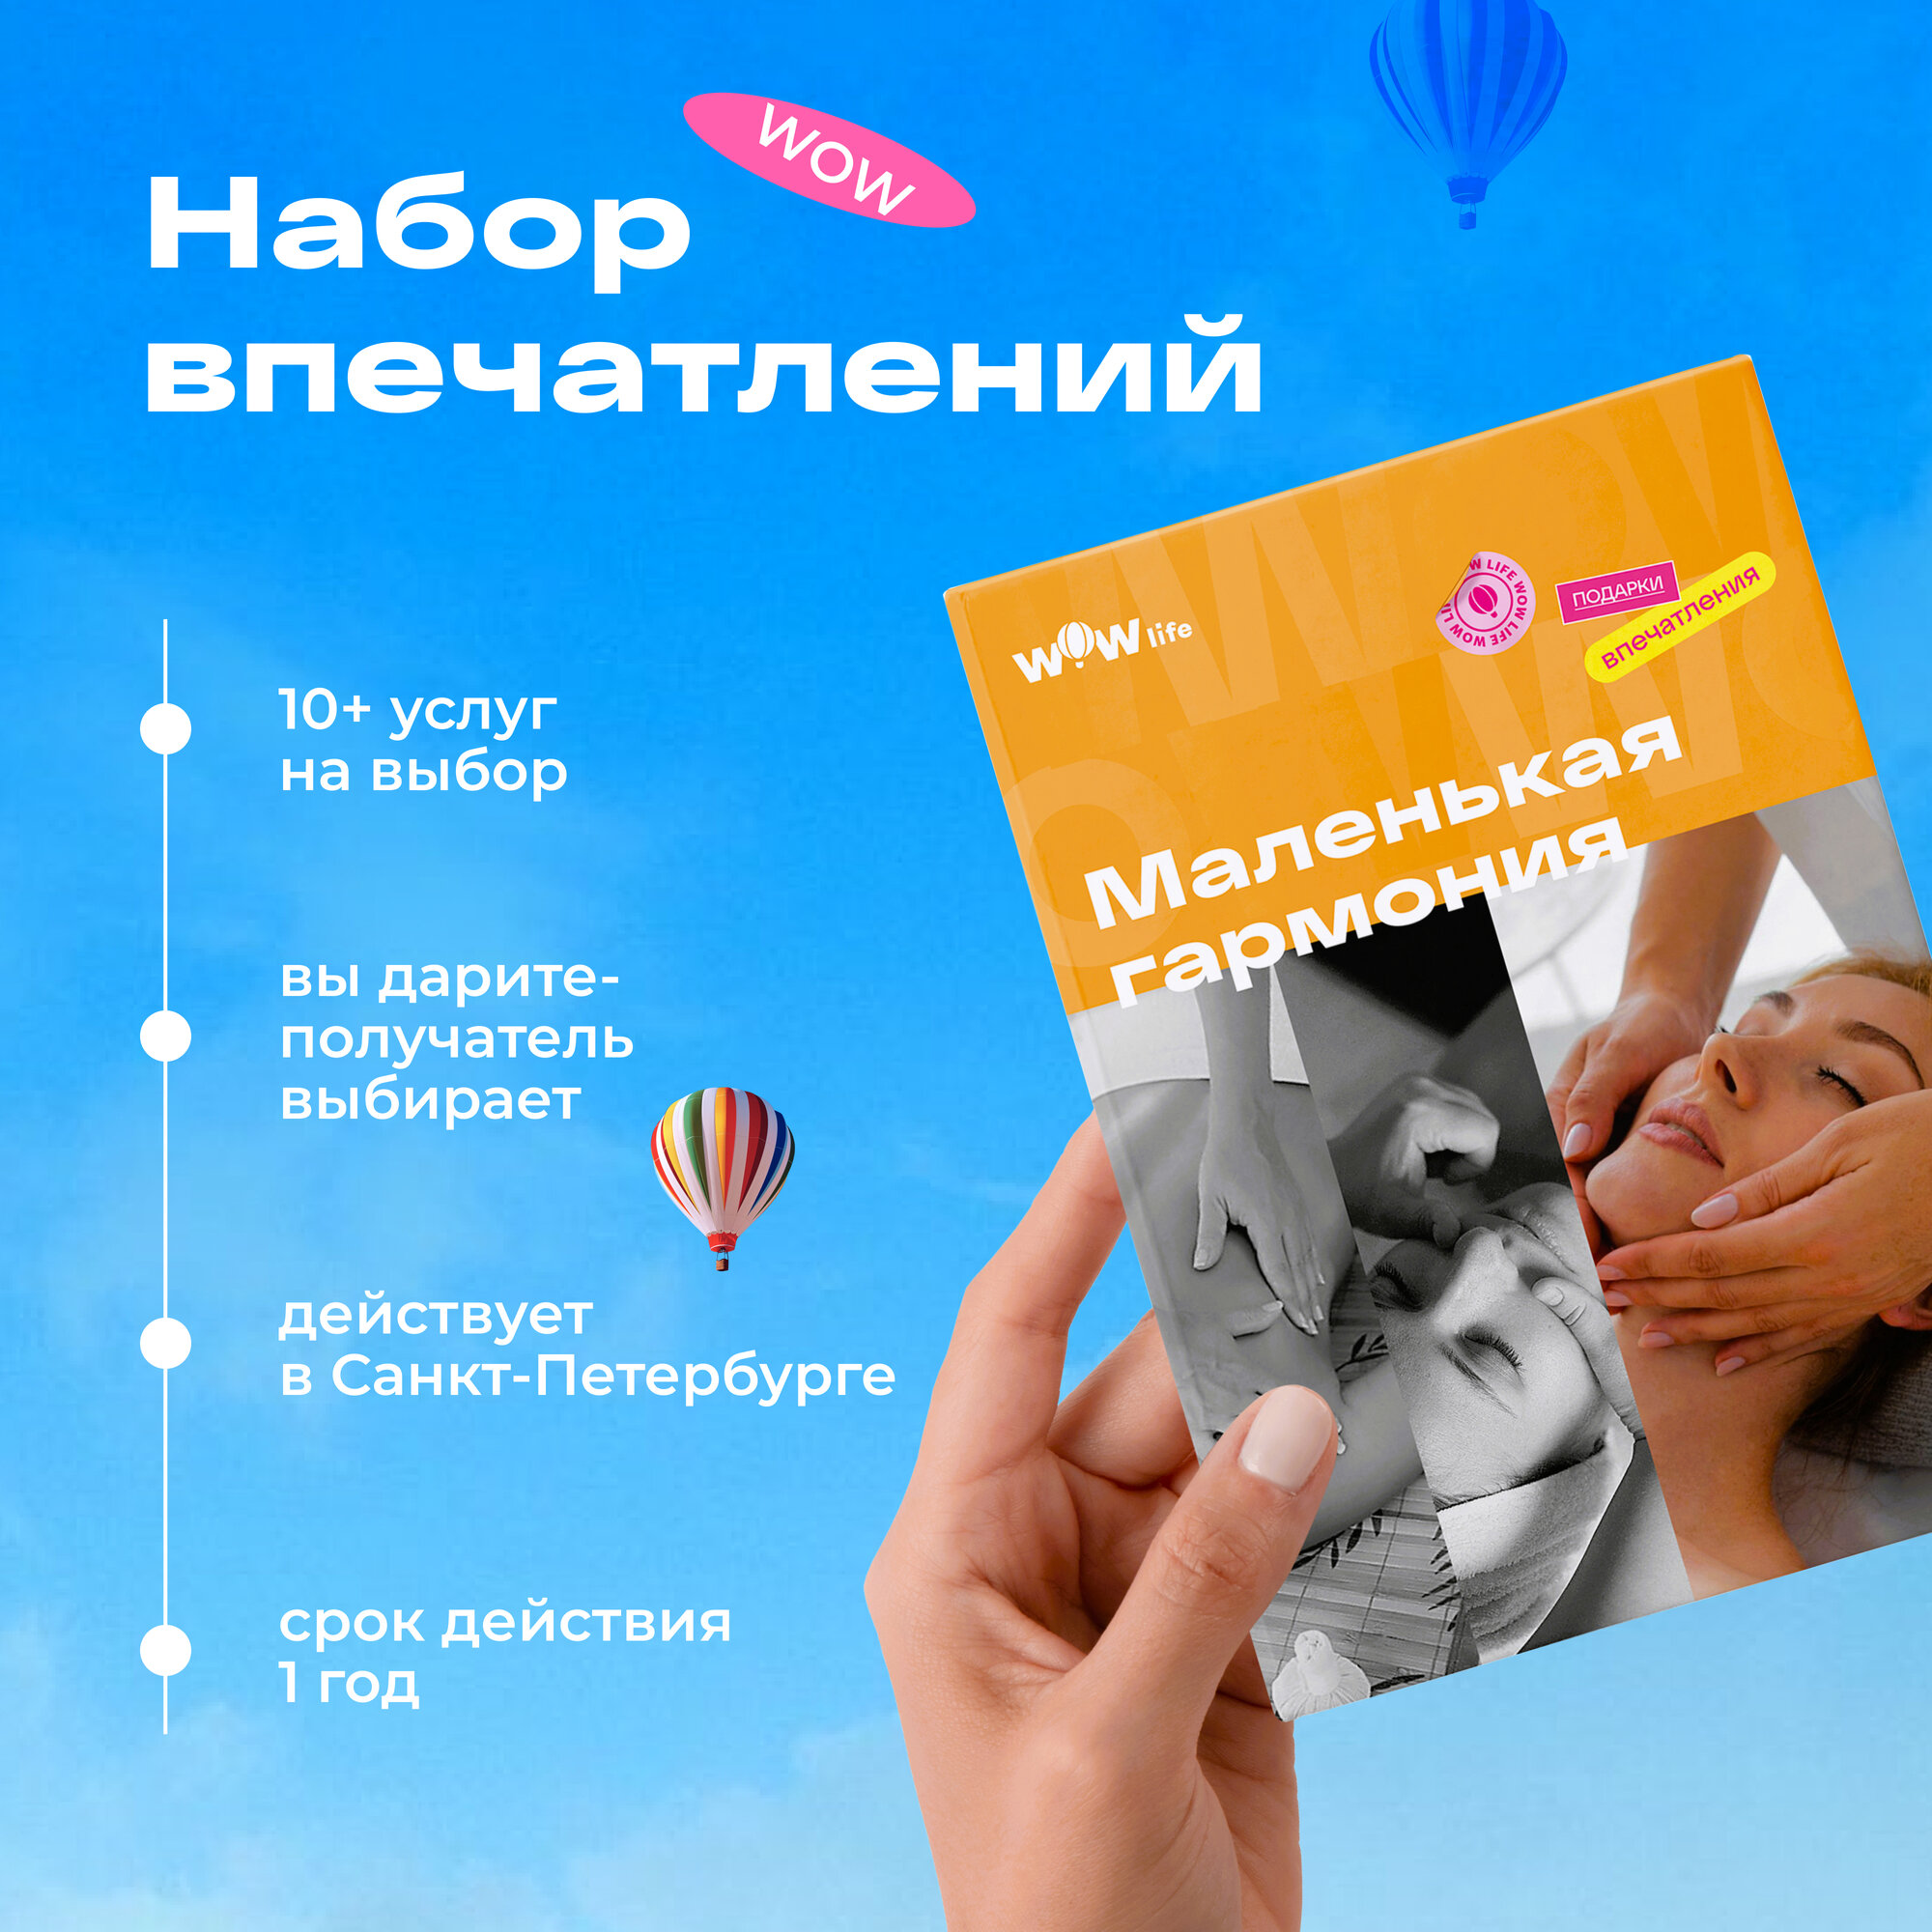 Подарочный сертификат WOWlife "Маленькая гармония" - набор из впечатлений на выбор, Санкт-Петербург